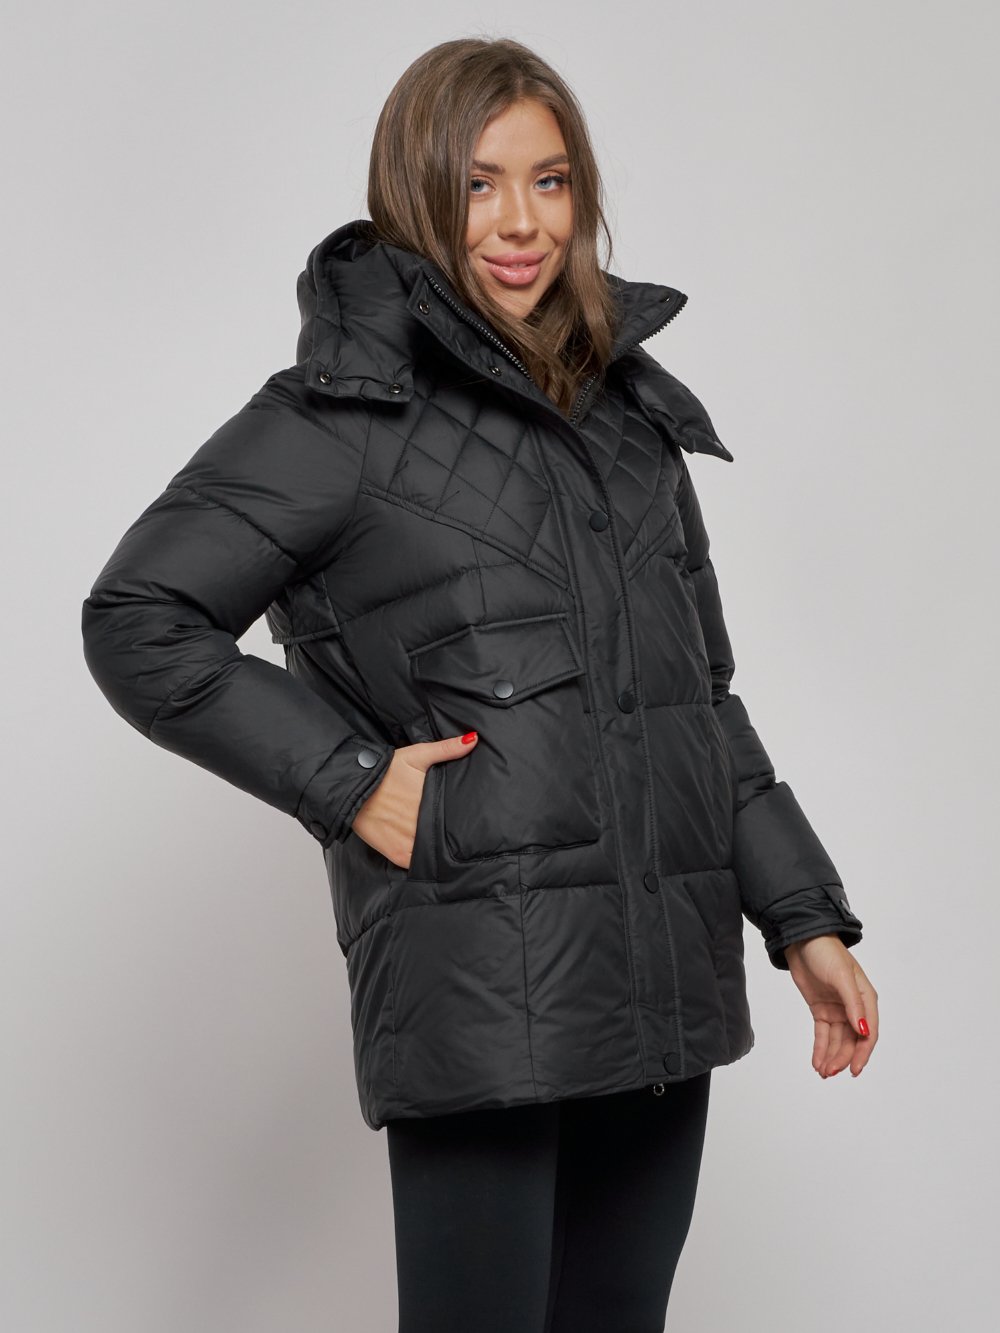 Купить куртку зимнюю оптом от производителя недорого в Москве 52301Ch 1